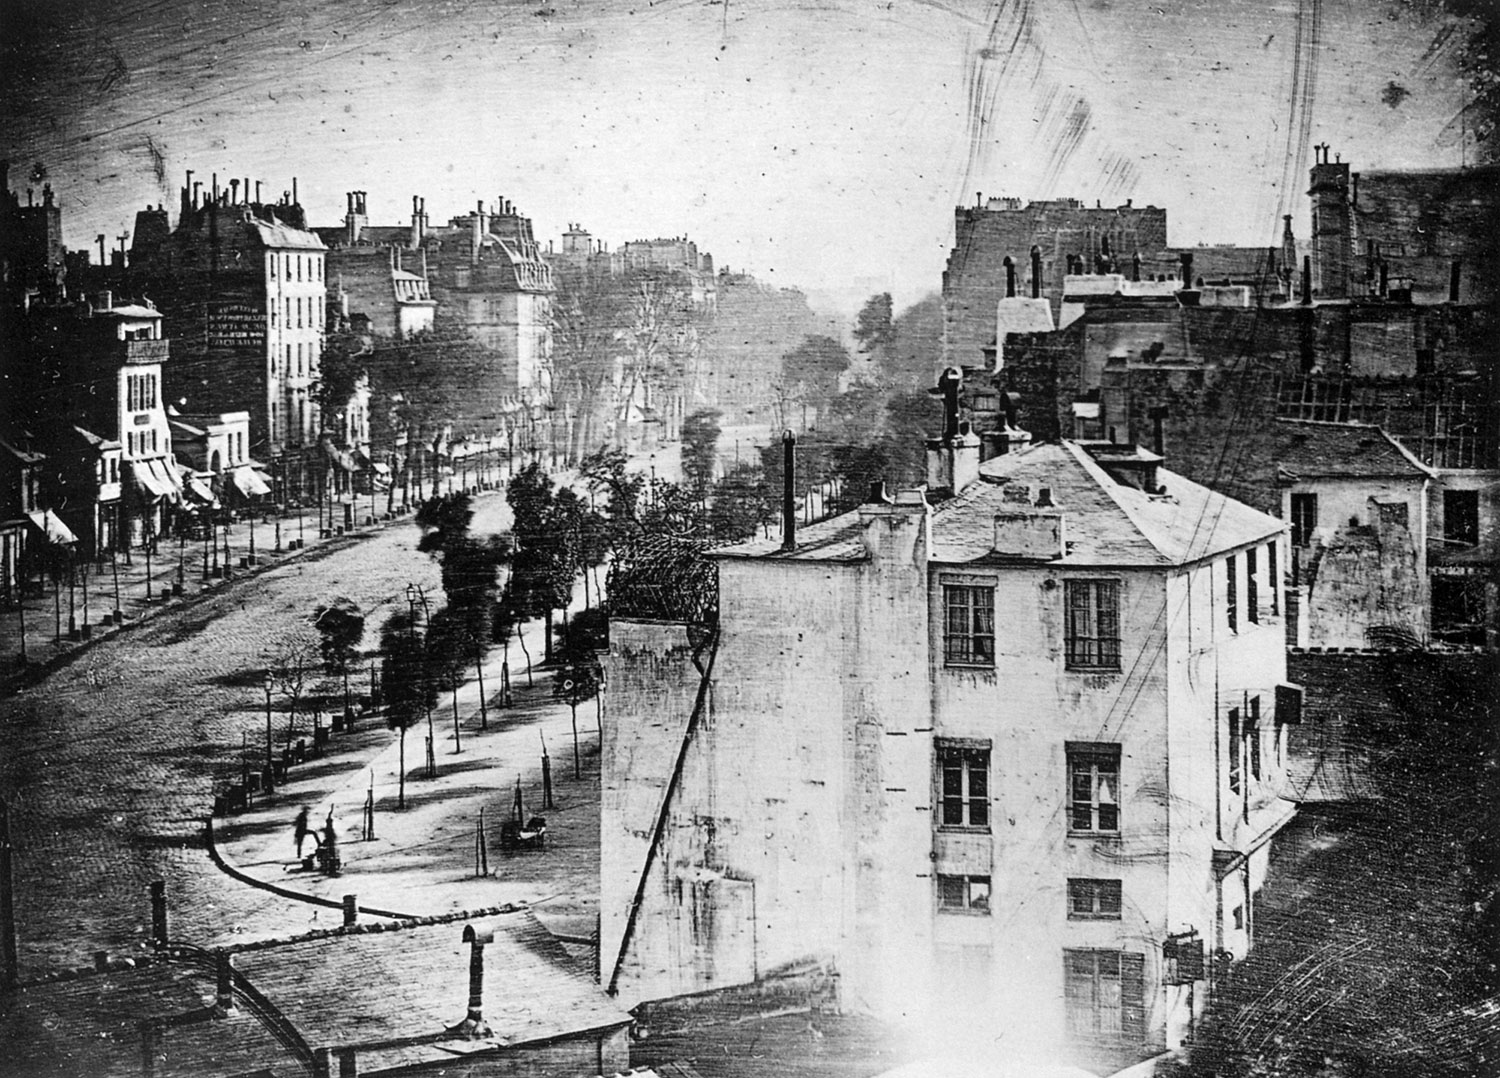 Boulevard du Temple, Paris 1838 - Louis Jacques Mandé Daguerre